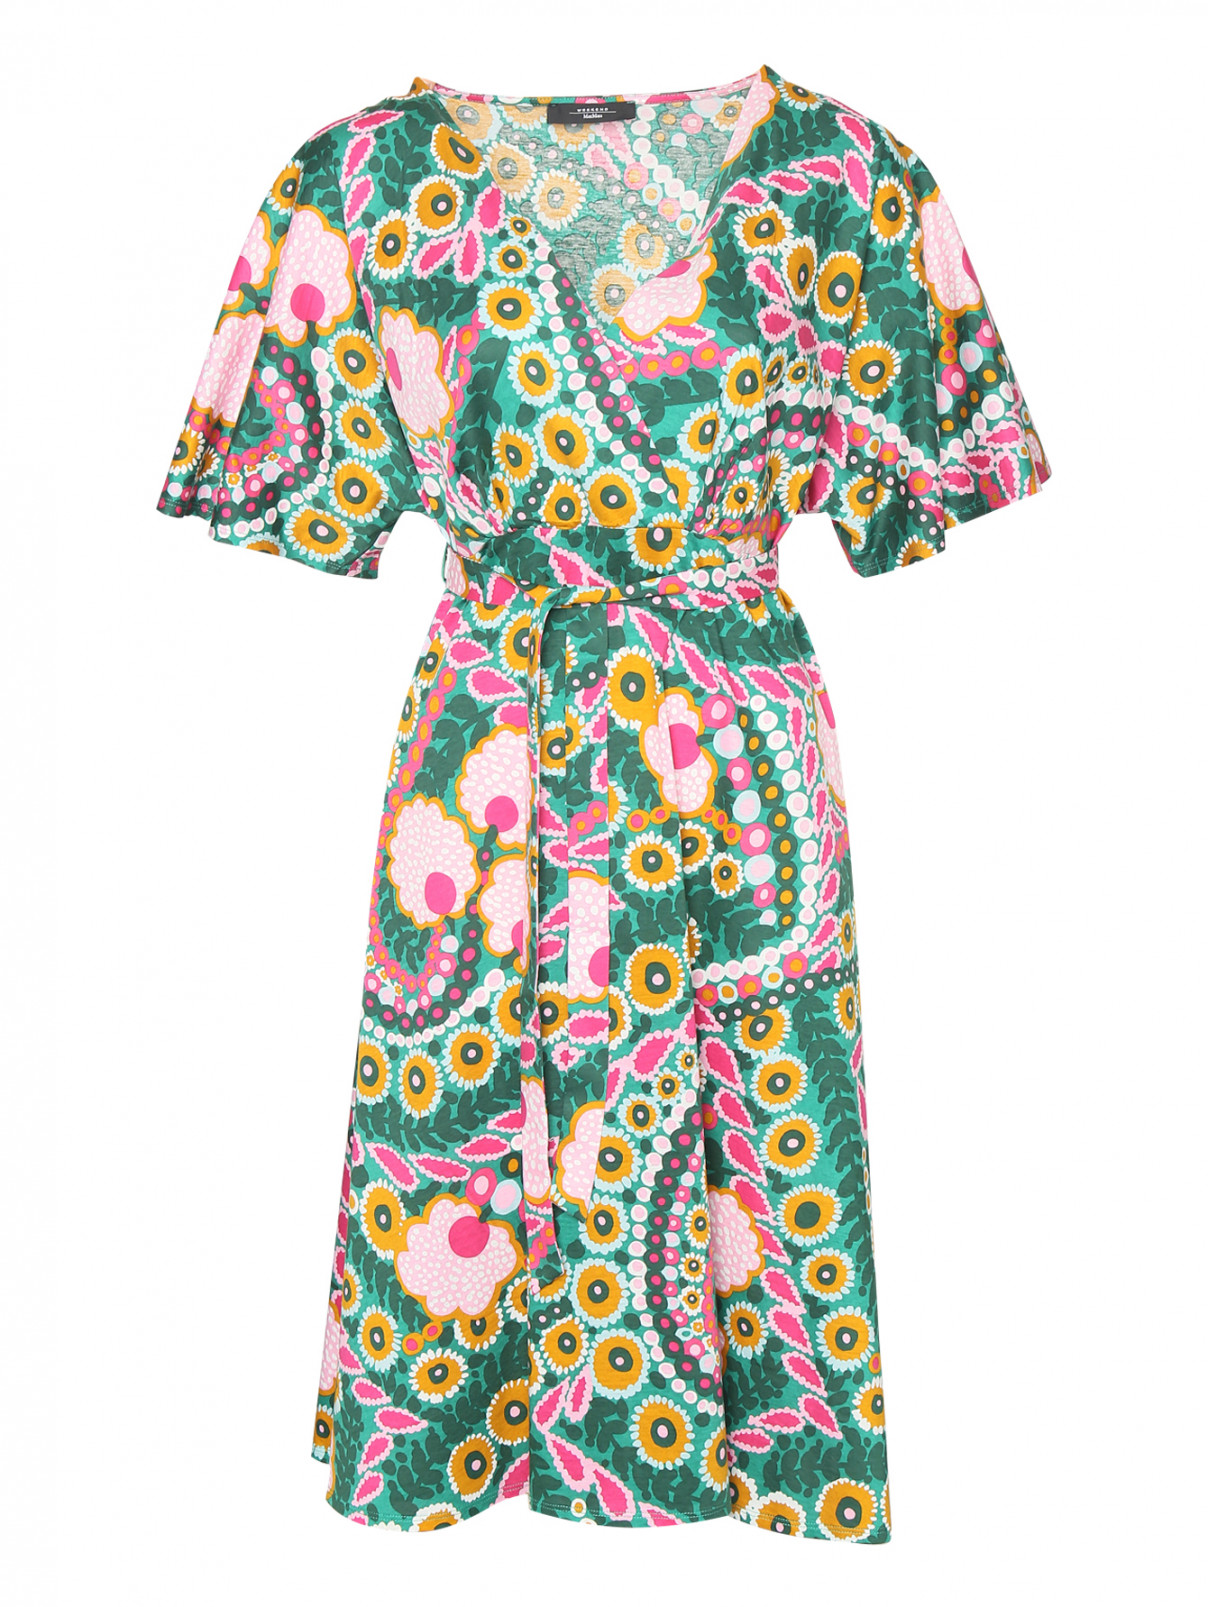 Хлопковое платье с коротким рукавом Weekend Max Mara  –  Общий вид  – Цвет:  Узор